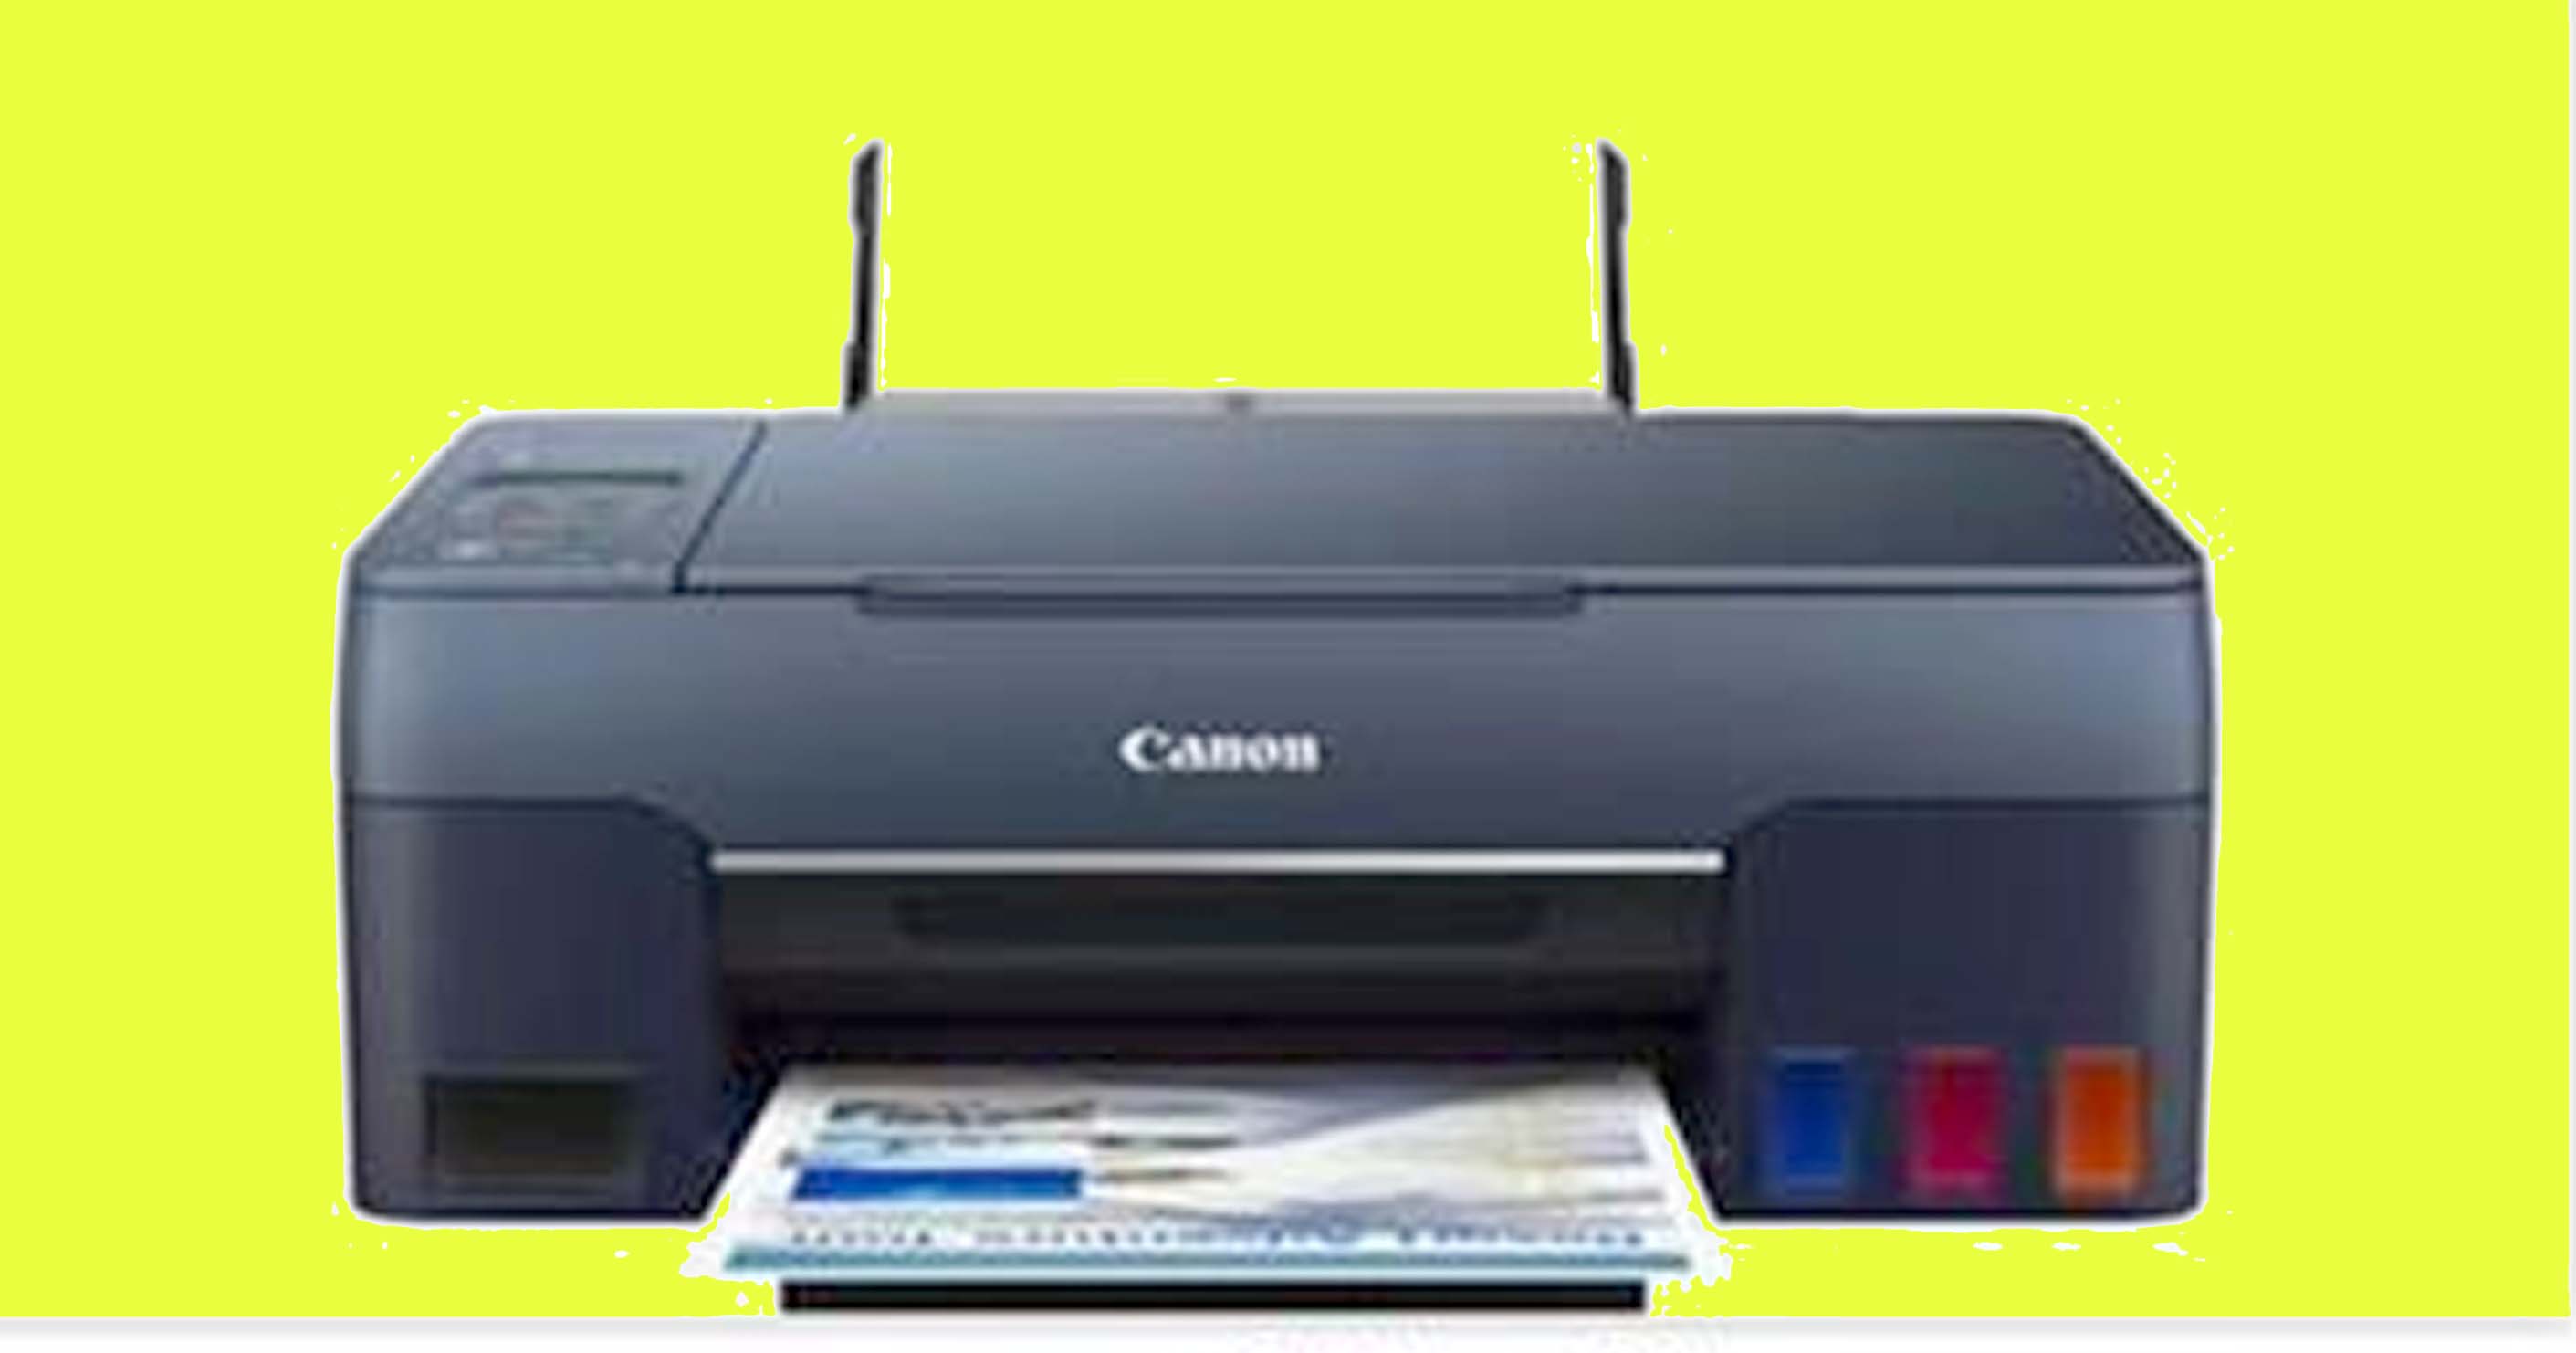 Canon ने PIXMA G सीरीज़ के तहत एक साथ लॉन्च किए 7 इंक टैंक प्रिंटर